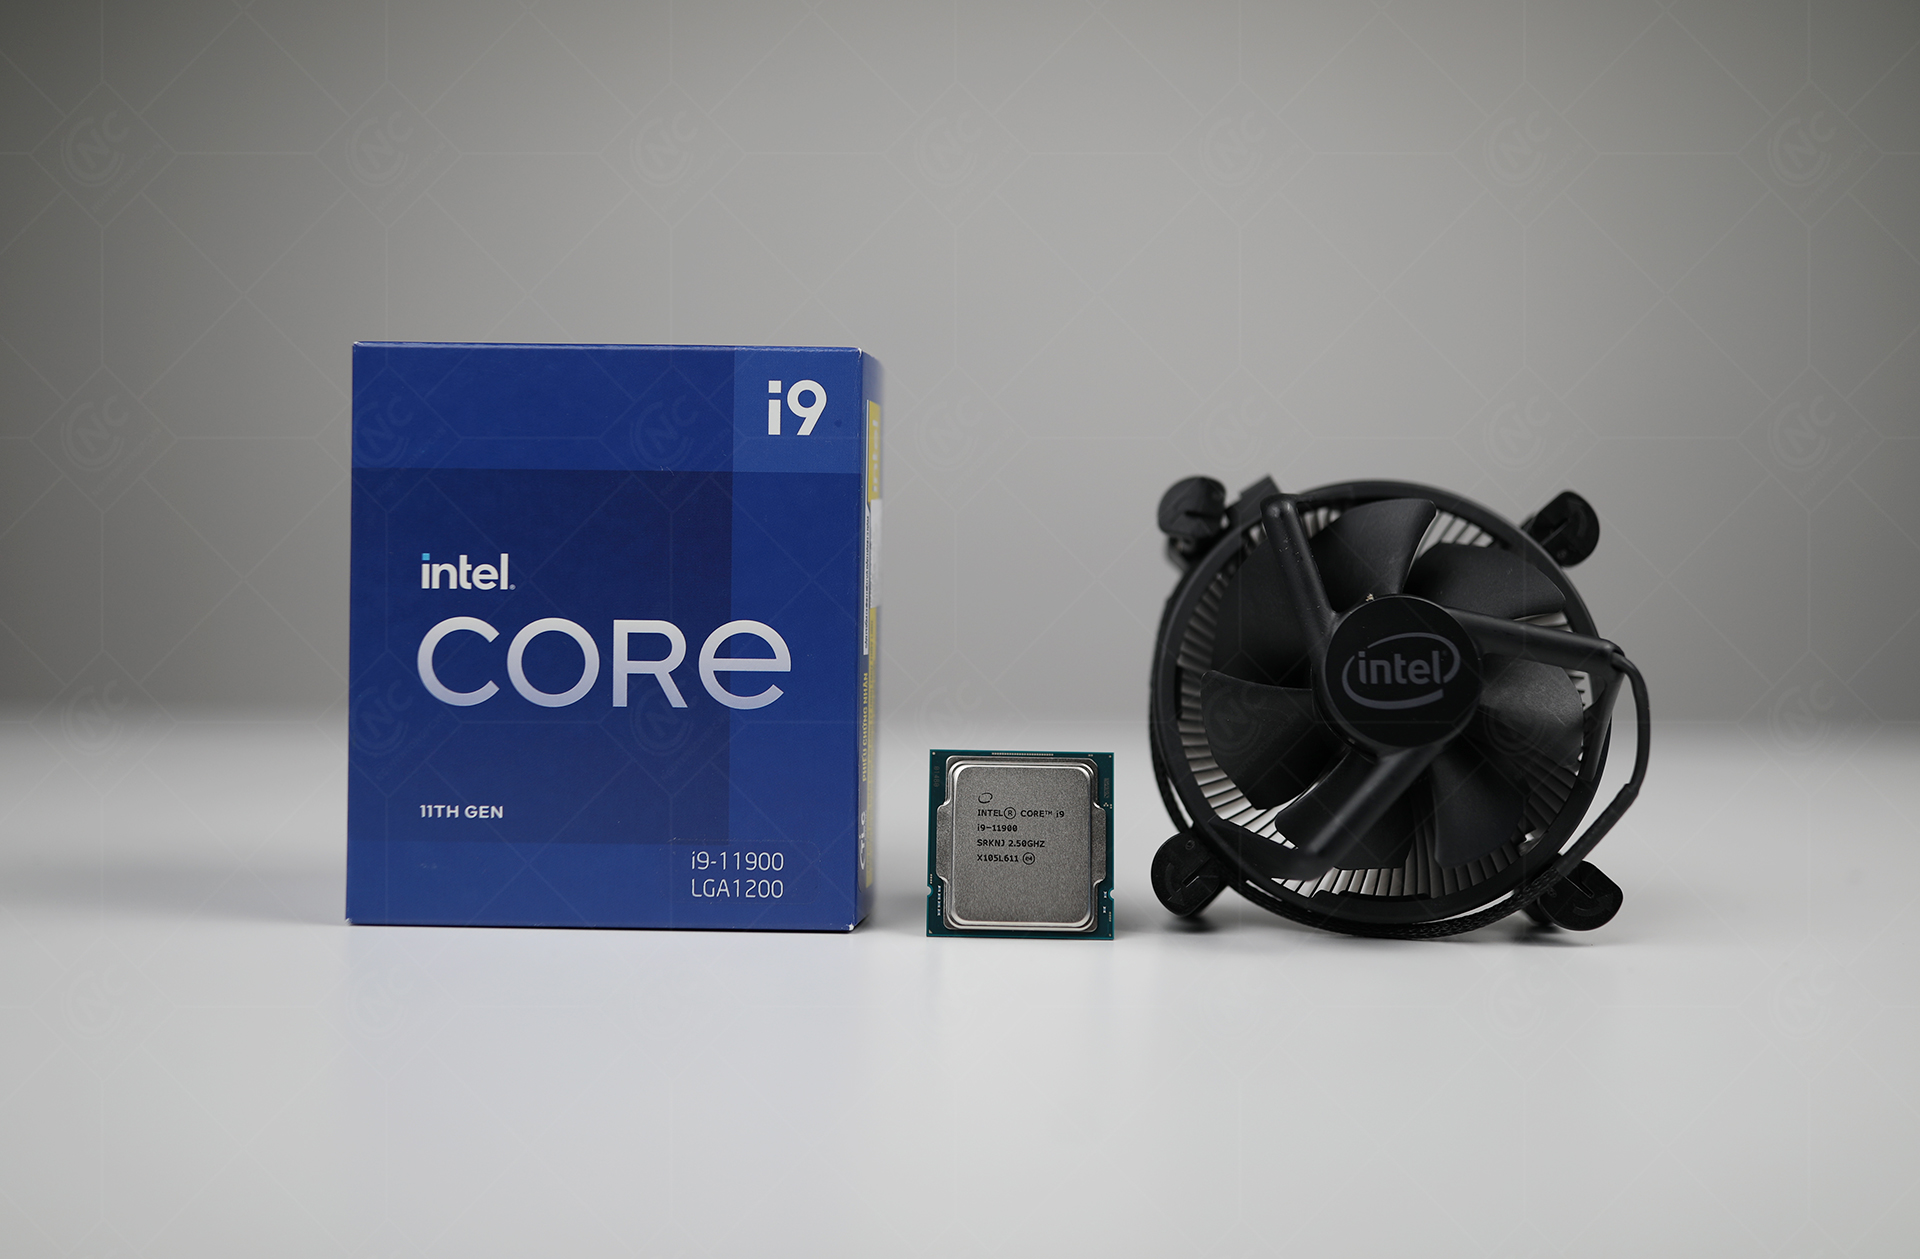 Intel Core i9 11900 kèm sẵn 1 chiếc tản nhiệt